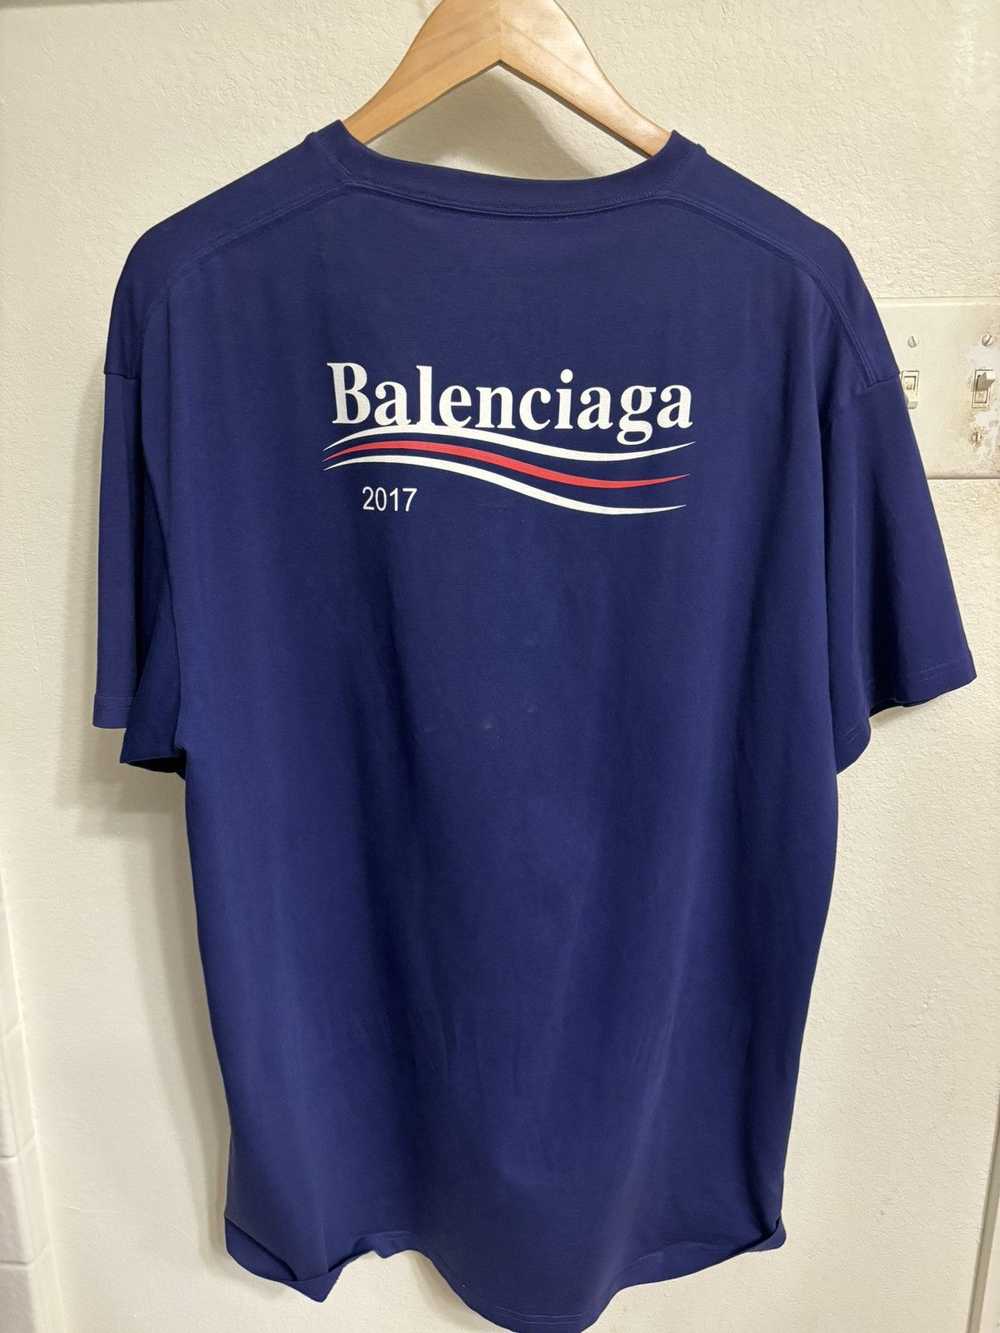 Balenciaga Balenciaga T-shirt 2017 - image 2